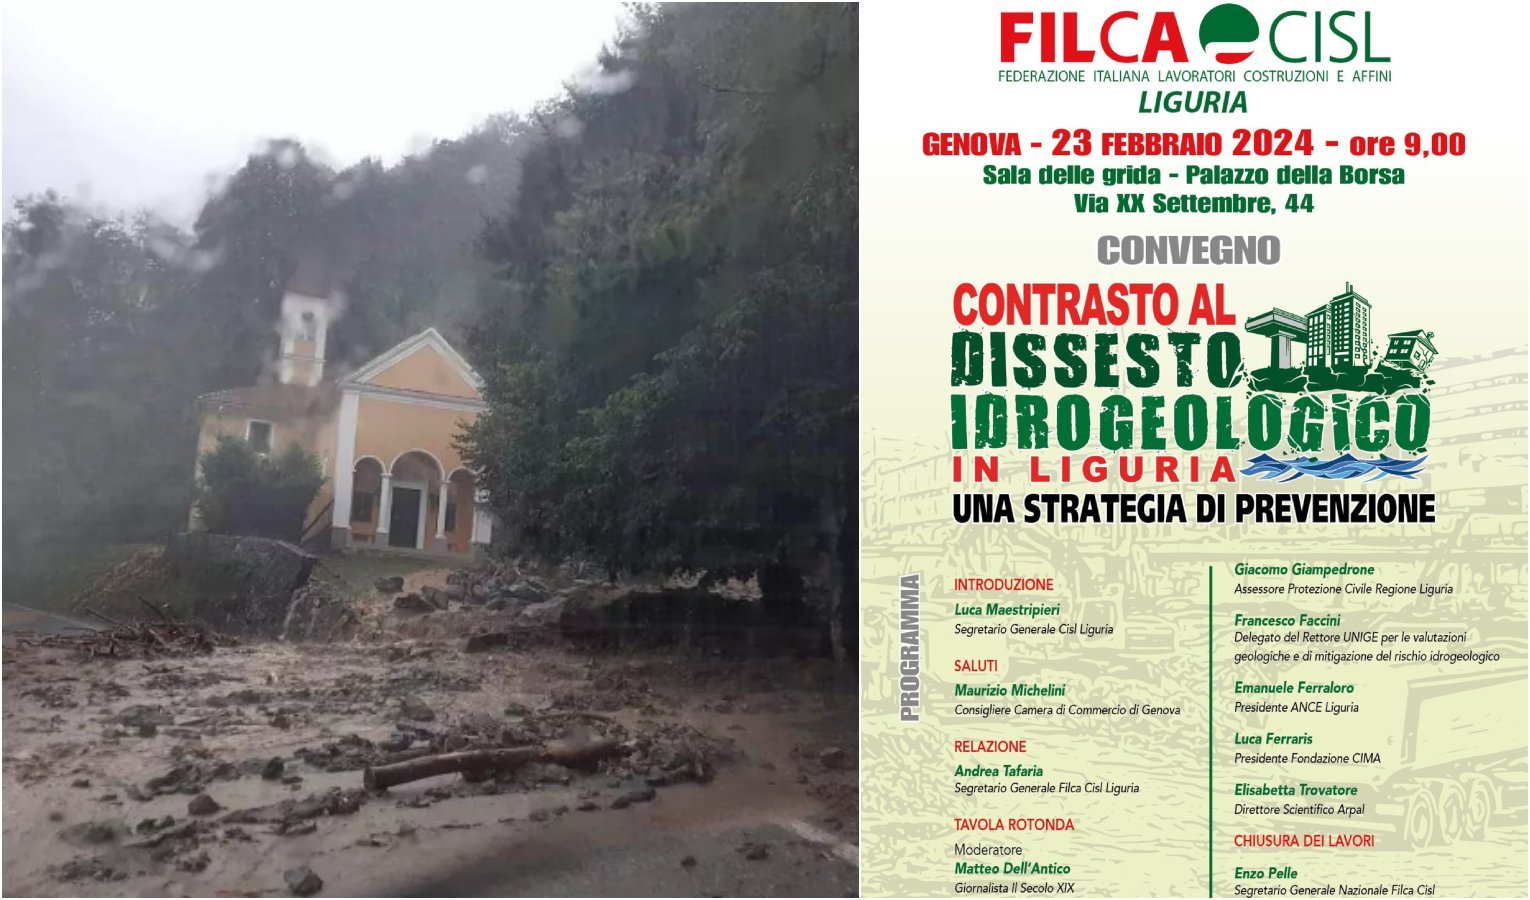 Convegno Filca Cisl sul contrasto al dissesto idrogeologico in Liguria